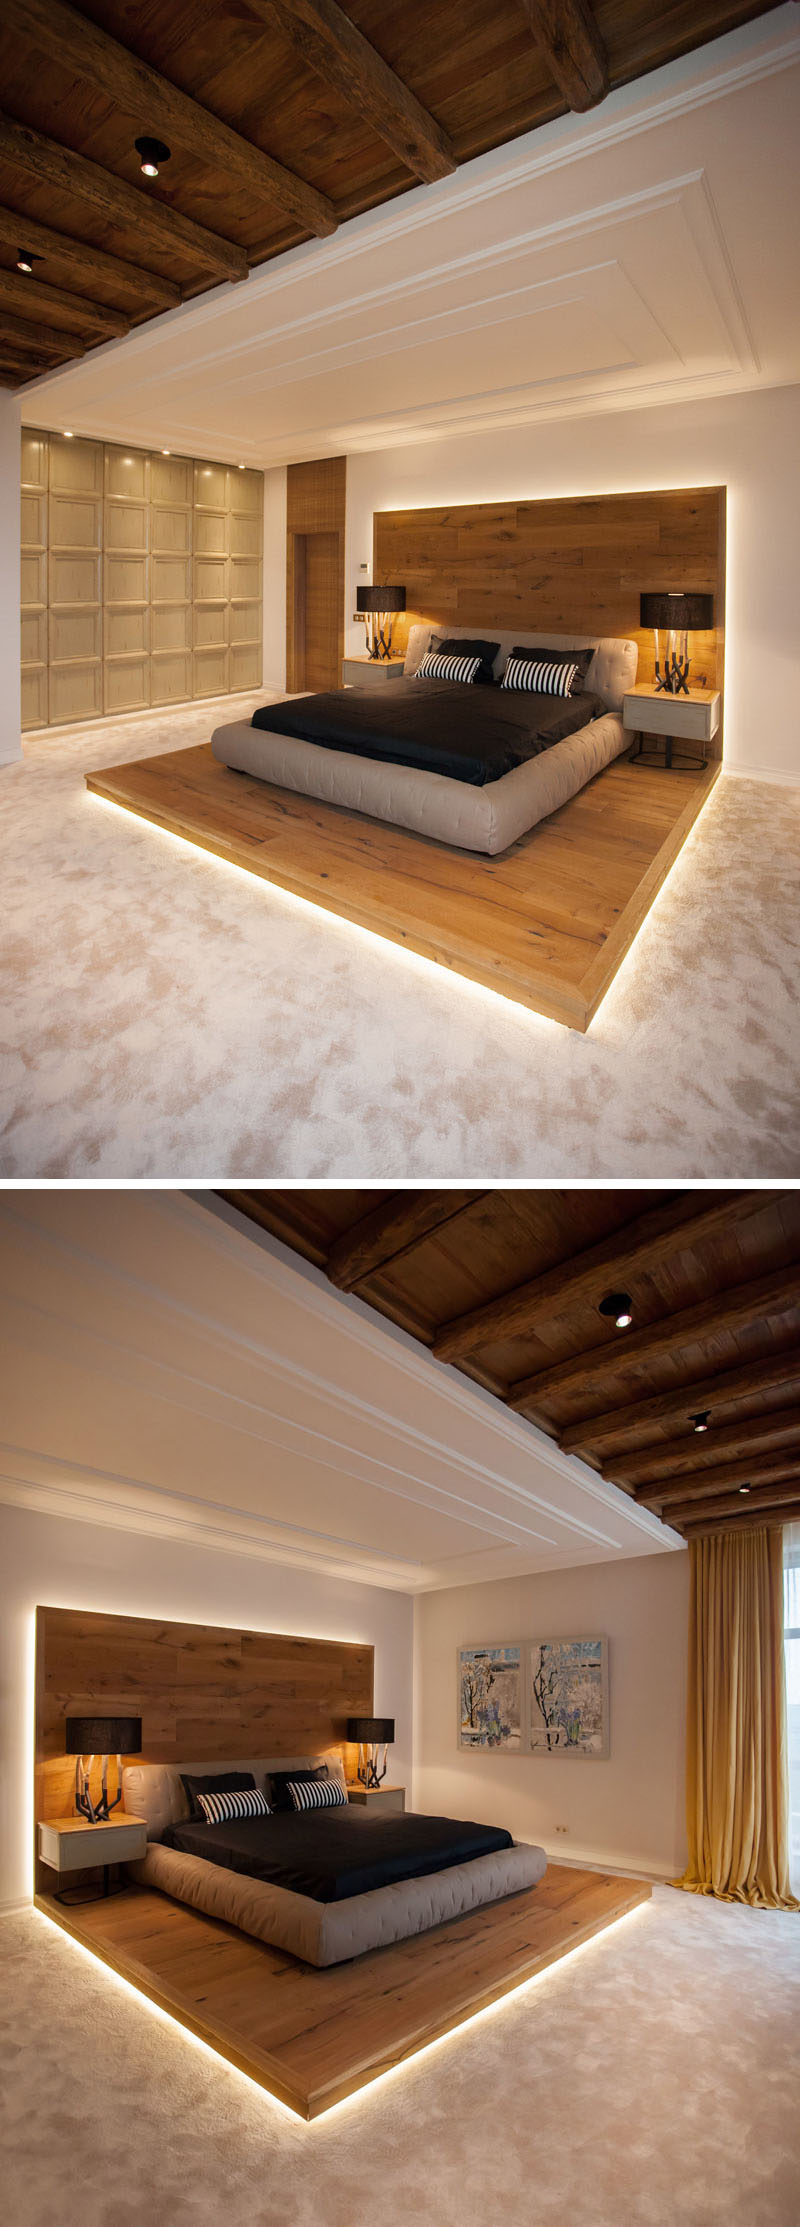 В этой современной спальне в стиле шале установлена ​​приподнятая кровать на деревянной платформе. Деревянная платформа подчеркнута скрытым освещением, чтобы подчеркнуть эту особенность и создать теплую атмосферу. #RaisedBed #WoodPlatform #ModernBedroom #InteriorDesign